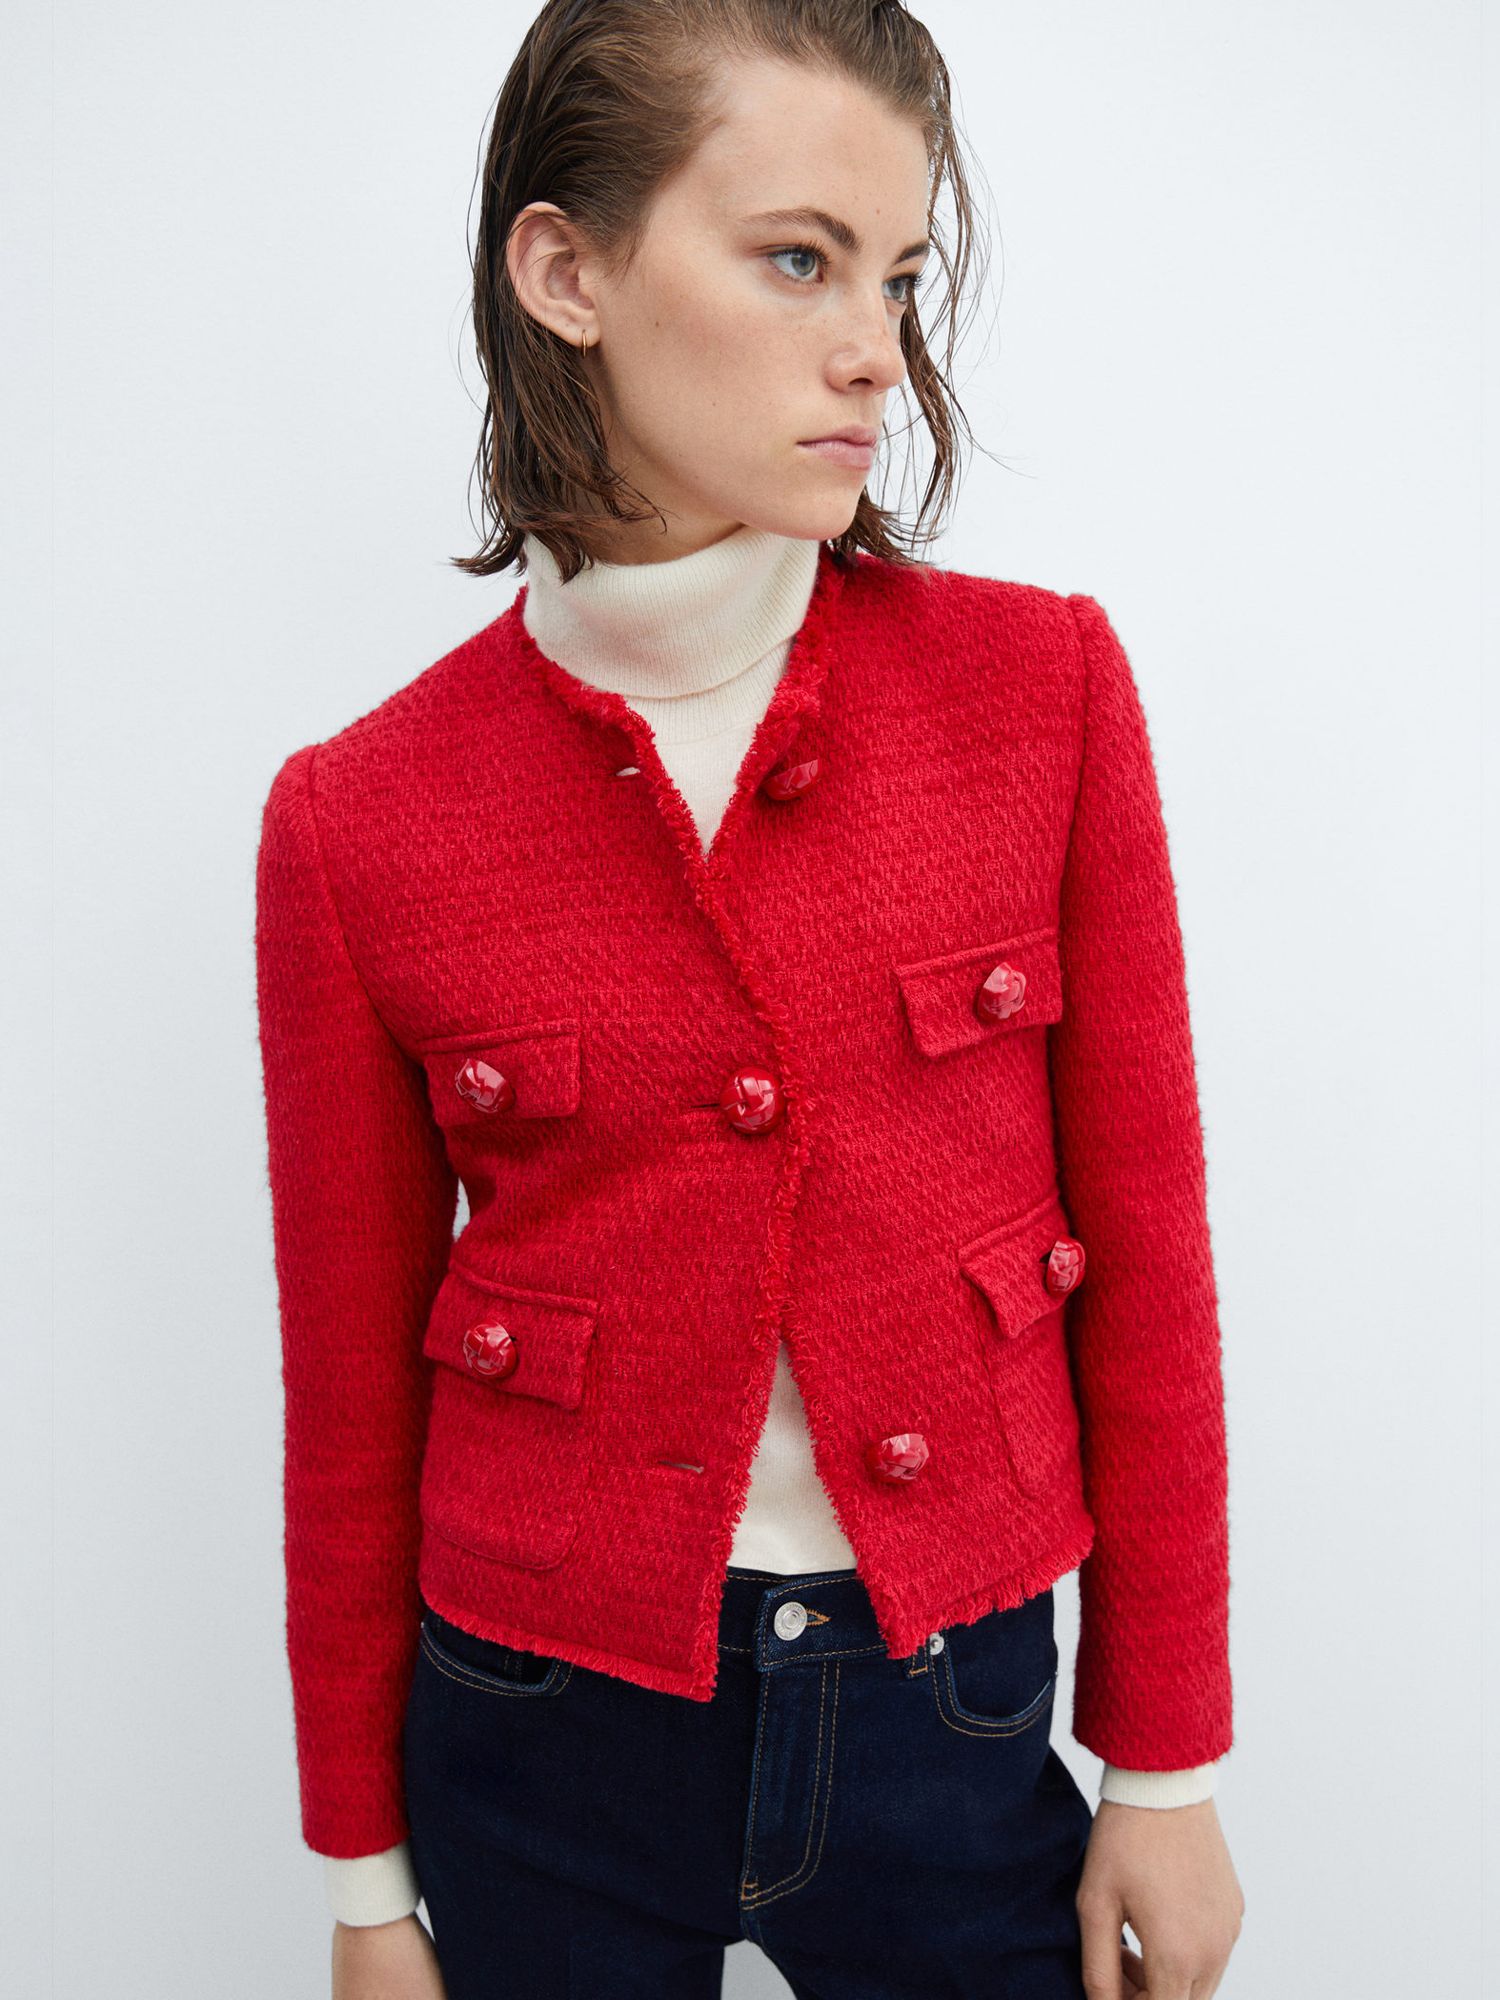 Mango Wintour Tweed Jacket, Red at John Lewis & Partners